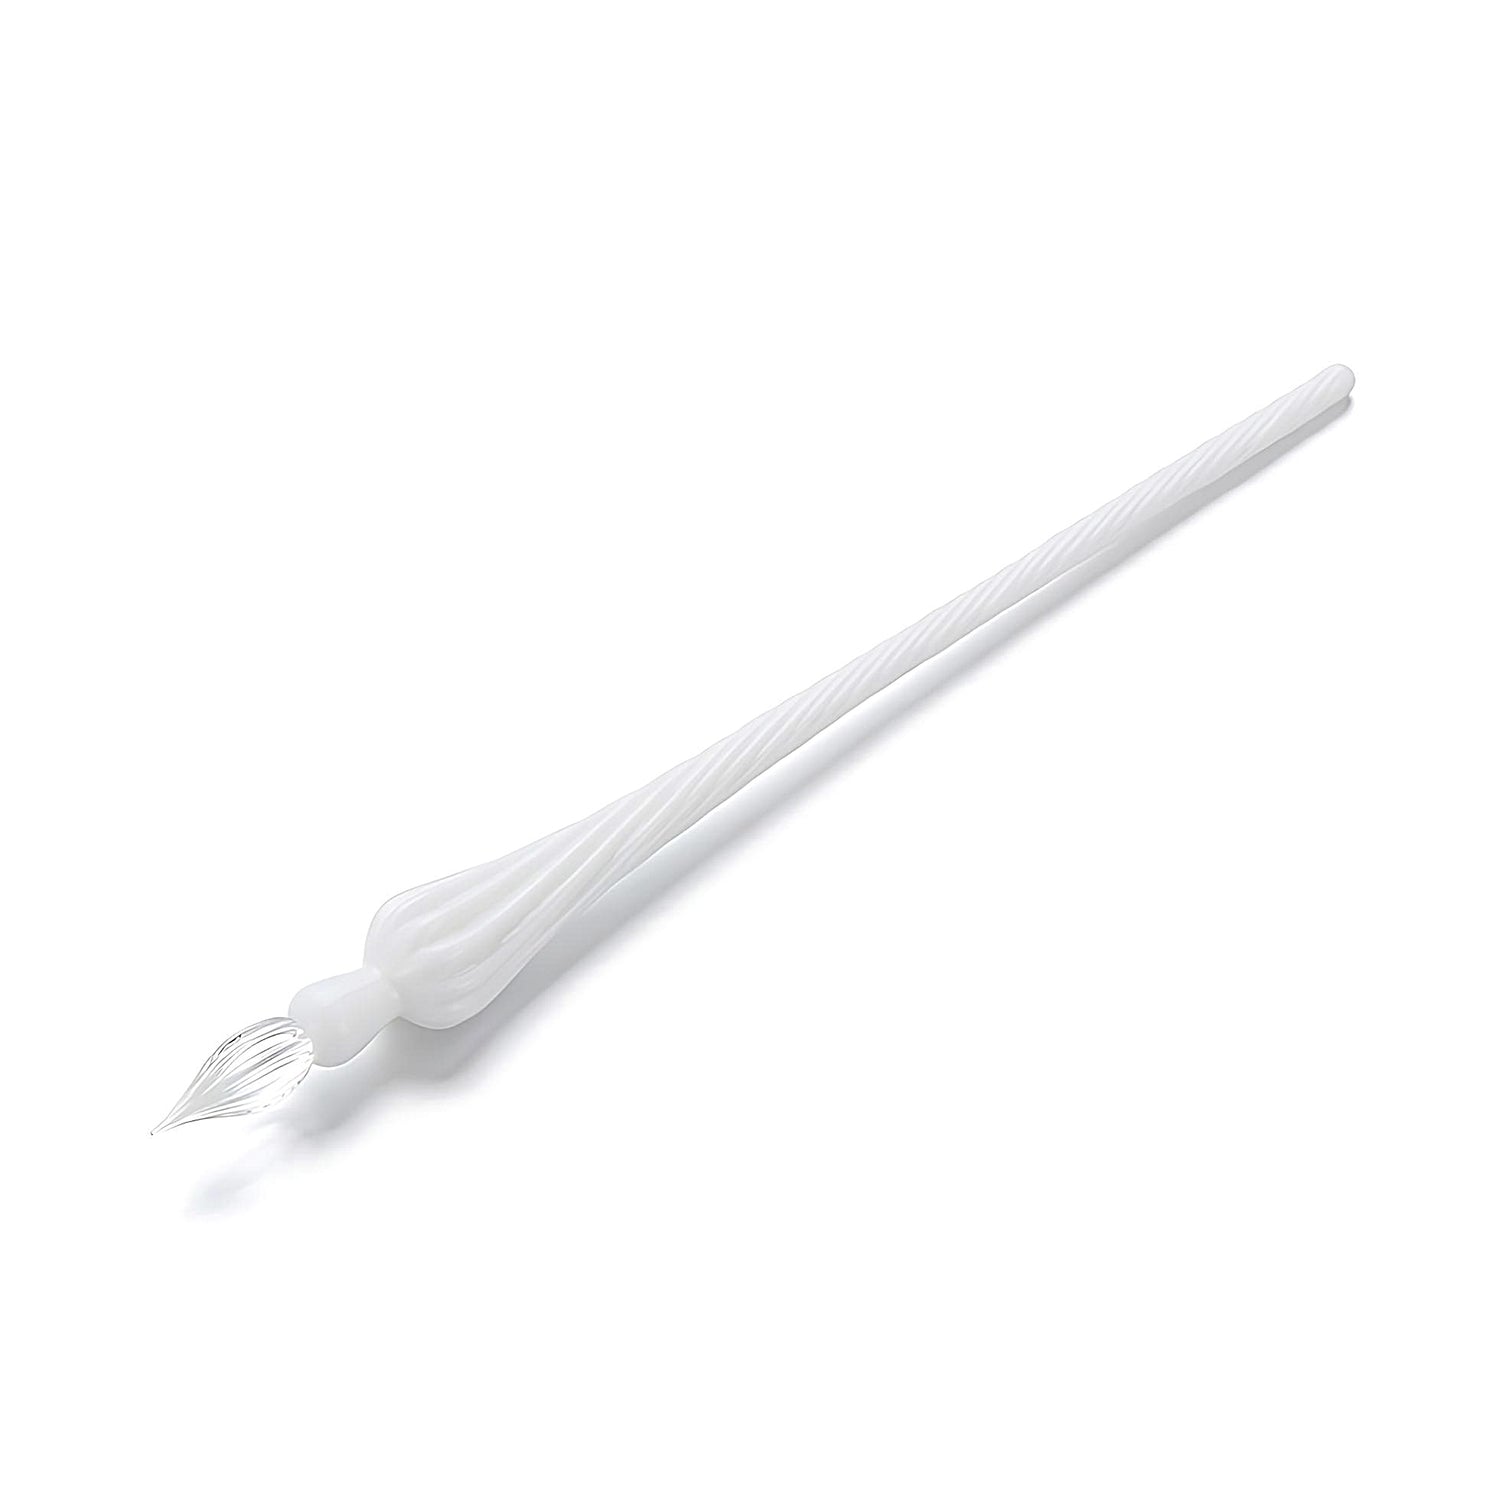 a white glass dip pen